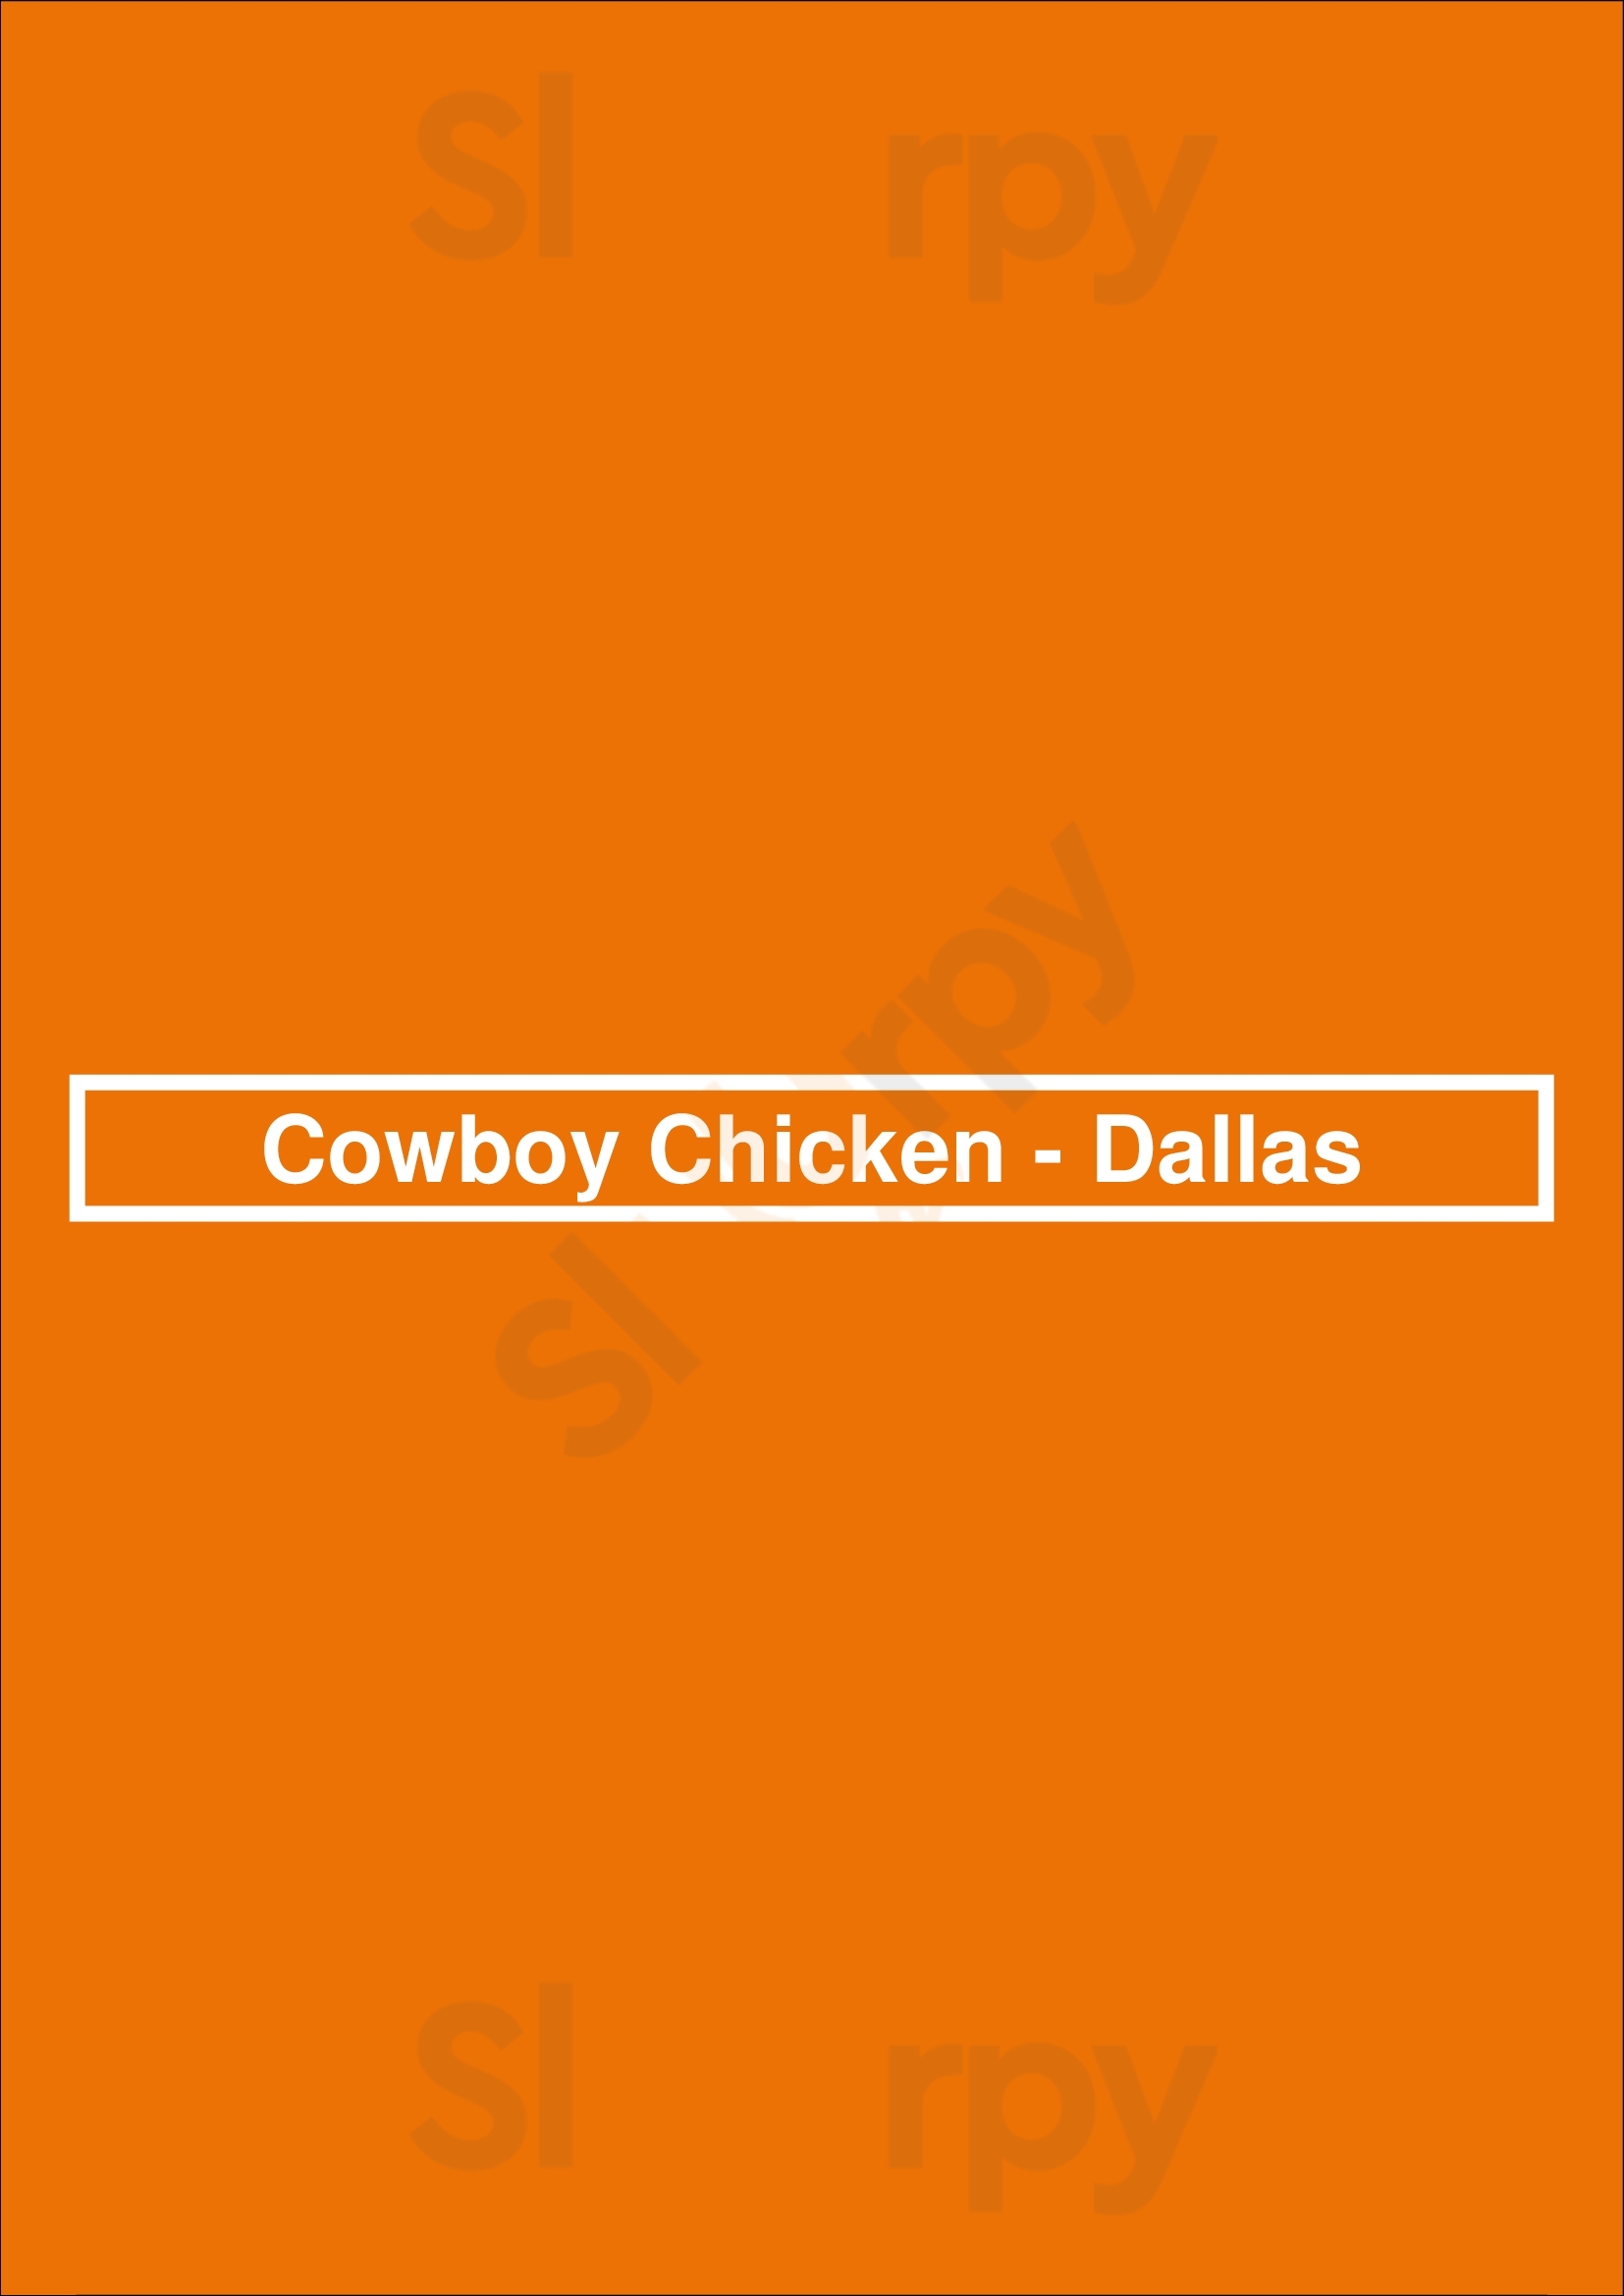 Cowboy Chicken - Dallas Dallas Menu - 1